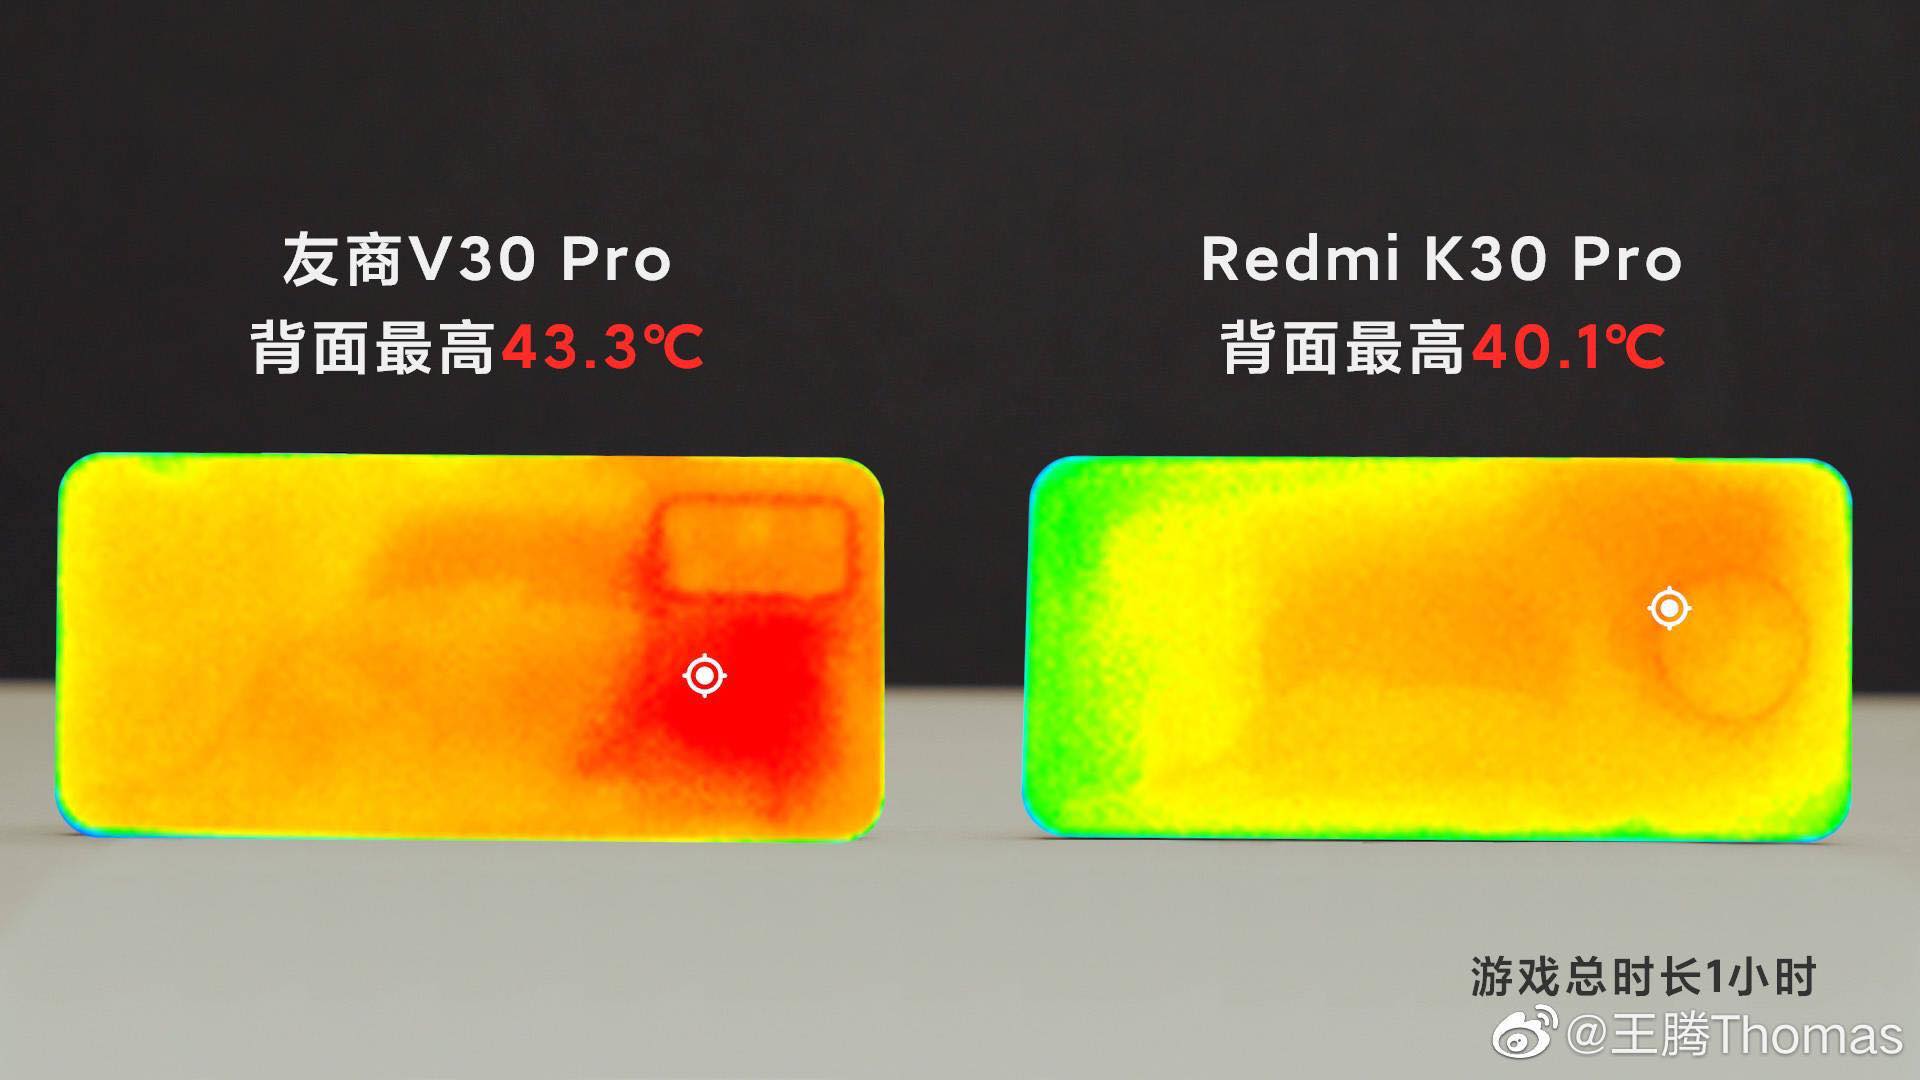 Redmi hé lộ toàn bộ
thông tin về chiếc K30 Pro: 2 camera 64MP, camera Pop-Up có
đèn đổi màu,...